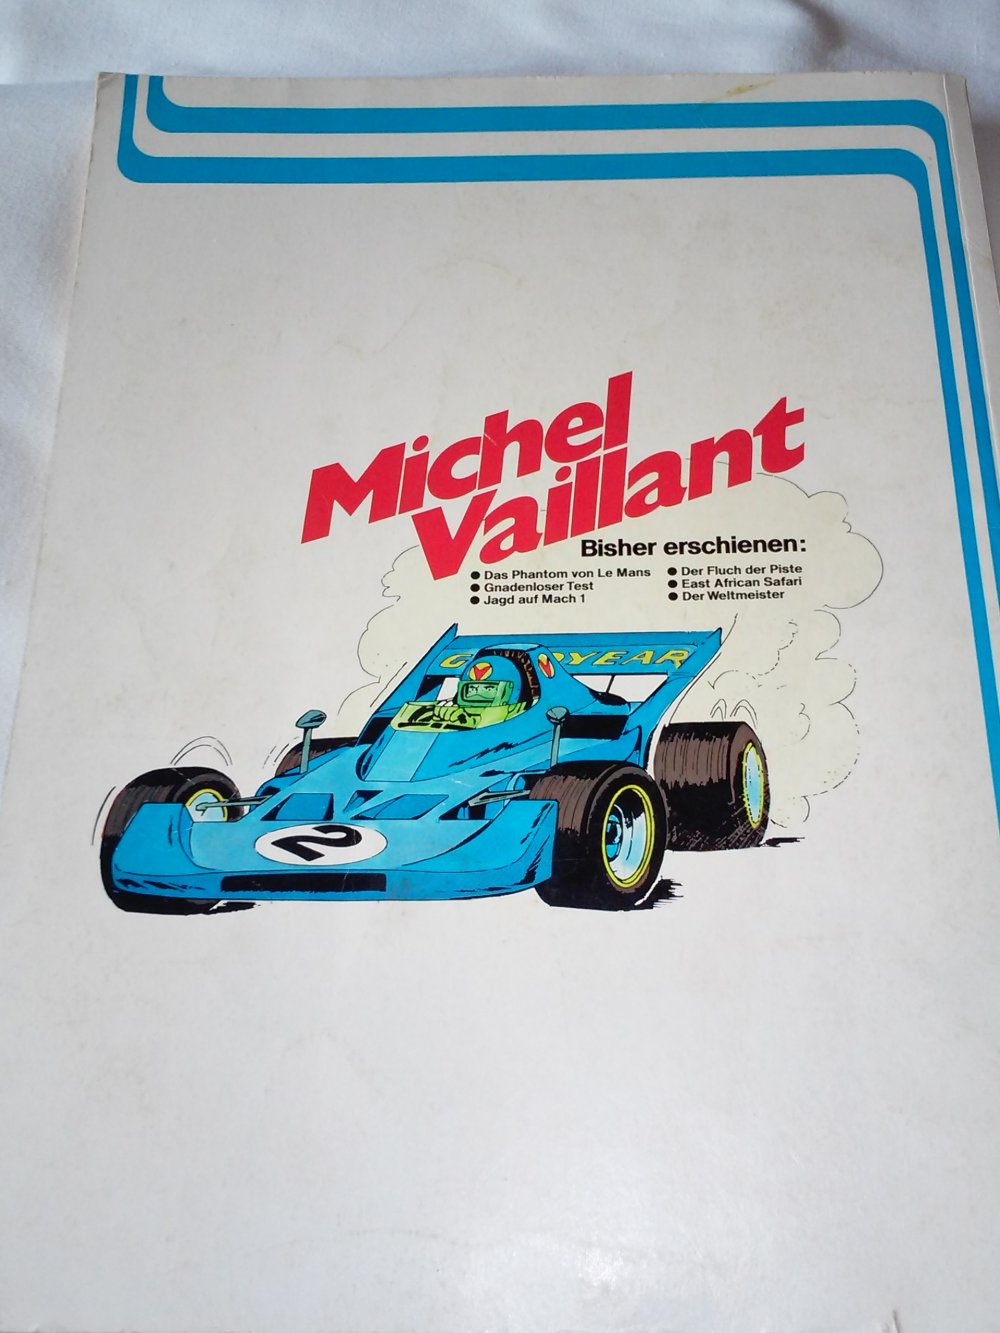 John Graton: Michel Vaillant Band 9, , K.o. für Steve Warson (Comic antik)